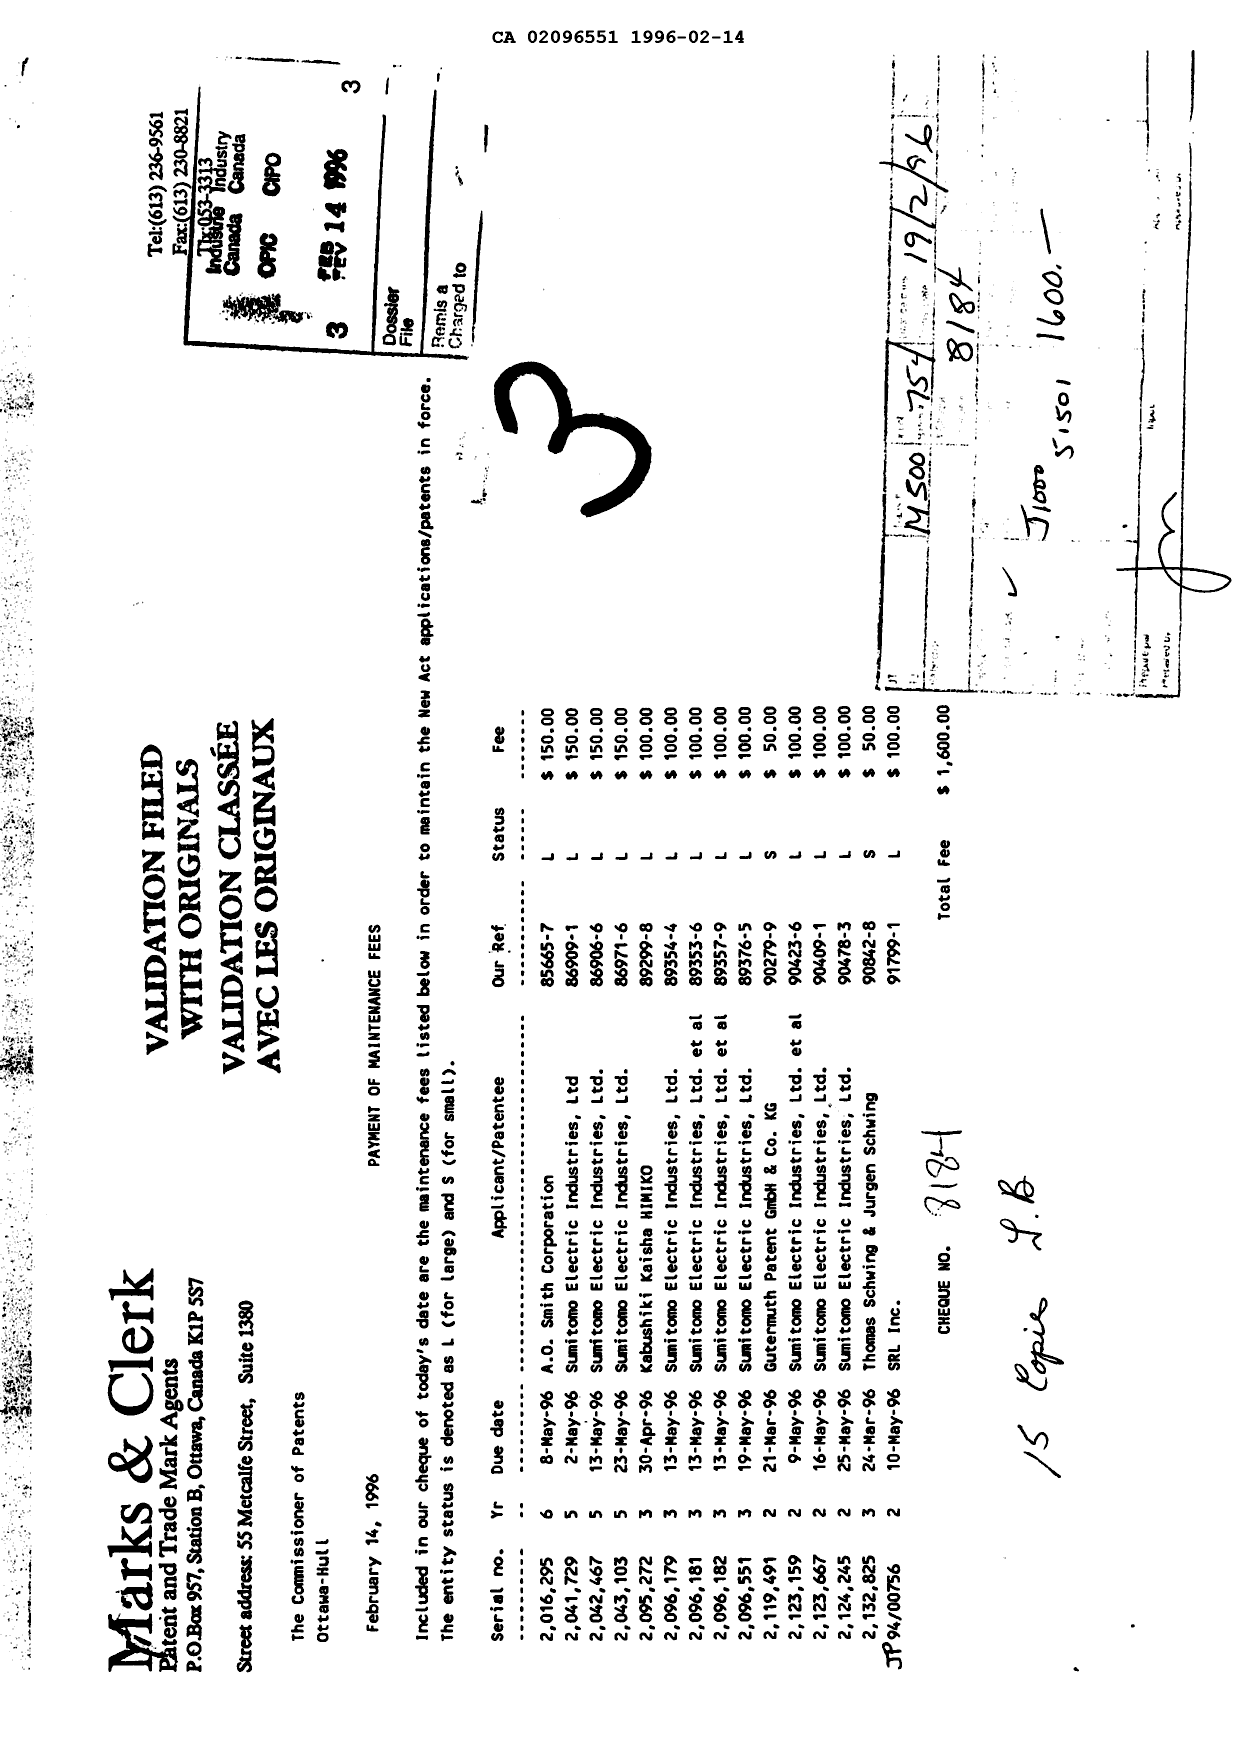 Document de brevet canadien 2096551. Taxes 19960214. Image 1 de 1